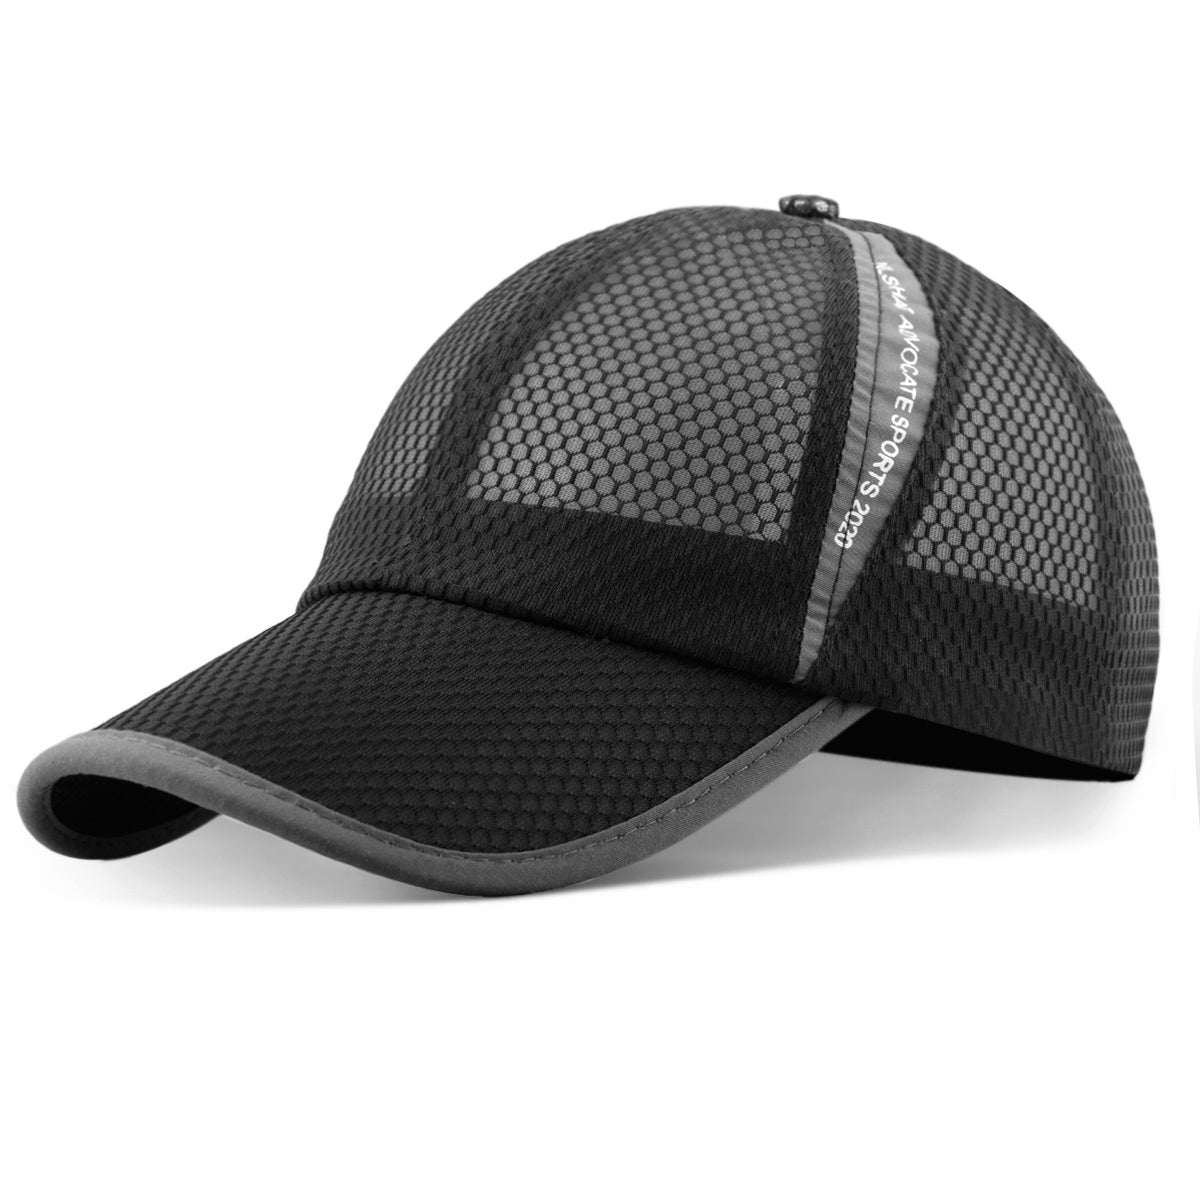 Unisex Full Mesh Baseball Cap Breathable Quick Dry Running hat